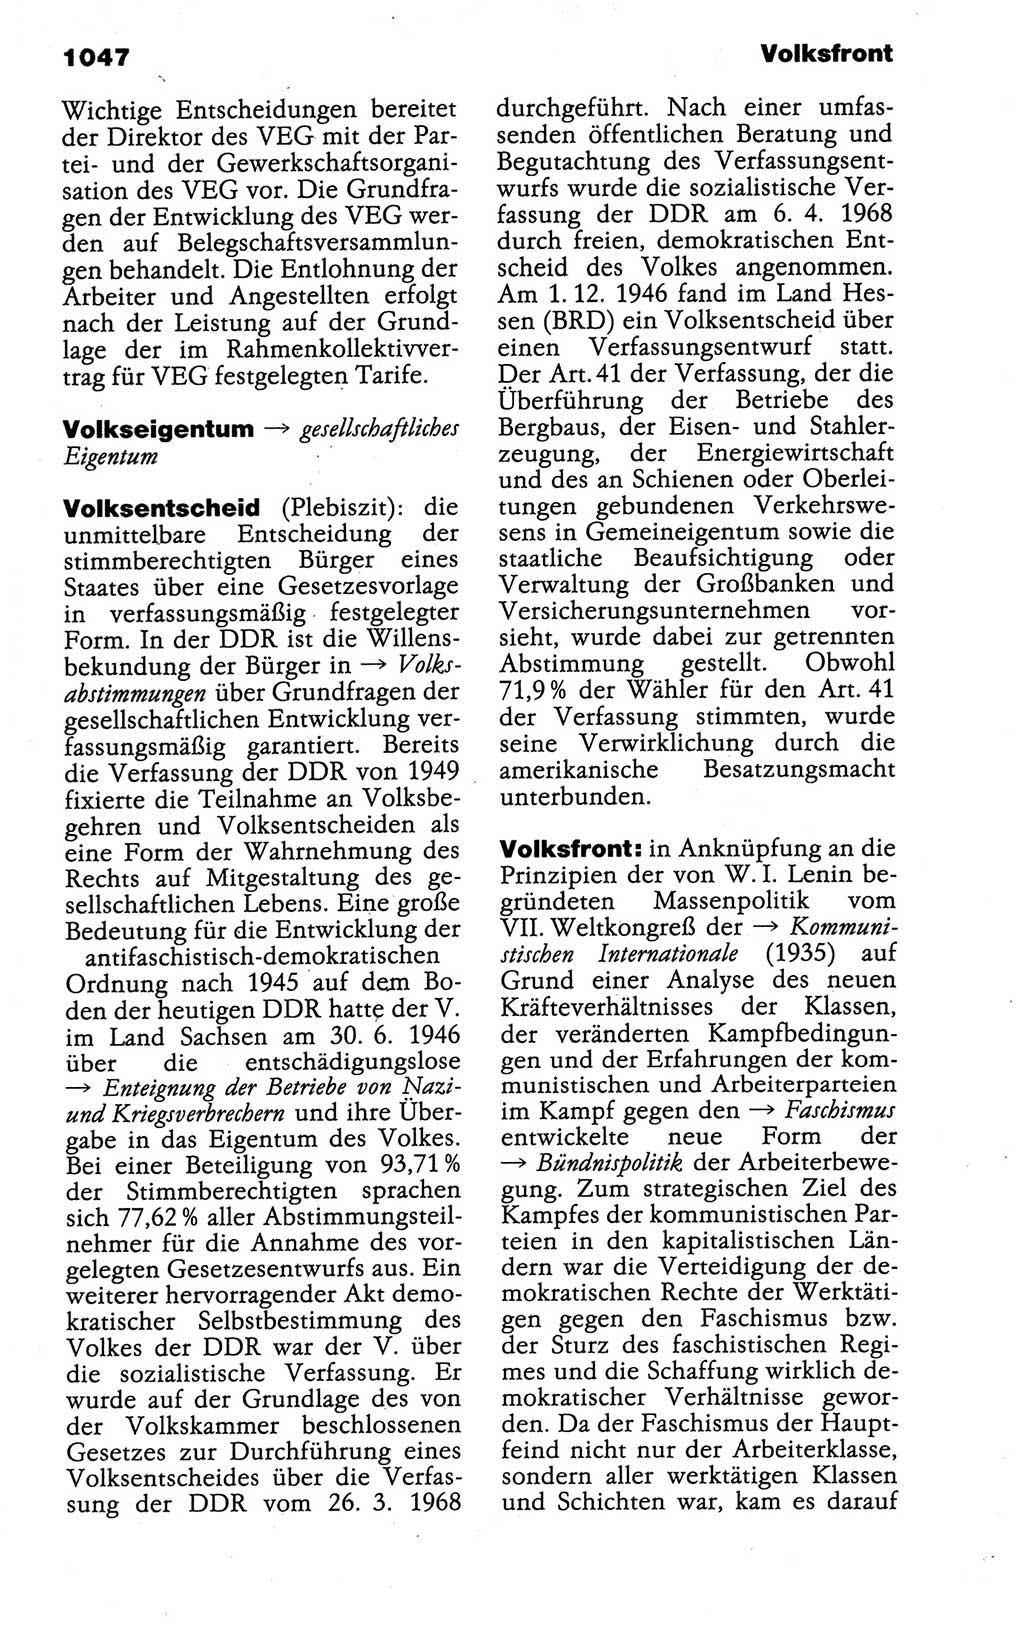 Kleines politisches Wörterbuch [Deutsche Demokratische Republik (DDR)] 1988, Seite 1047 (Kl. pol. Wb. DDR 1988, S. 1047)